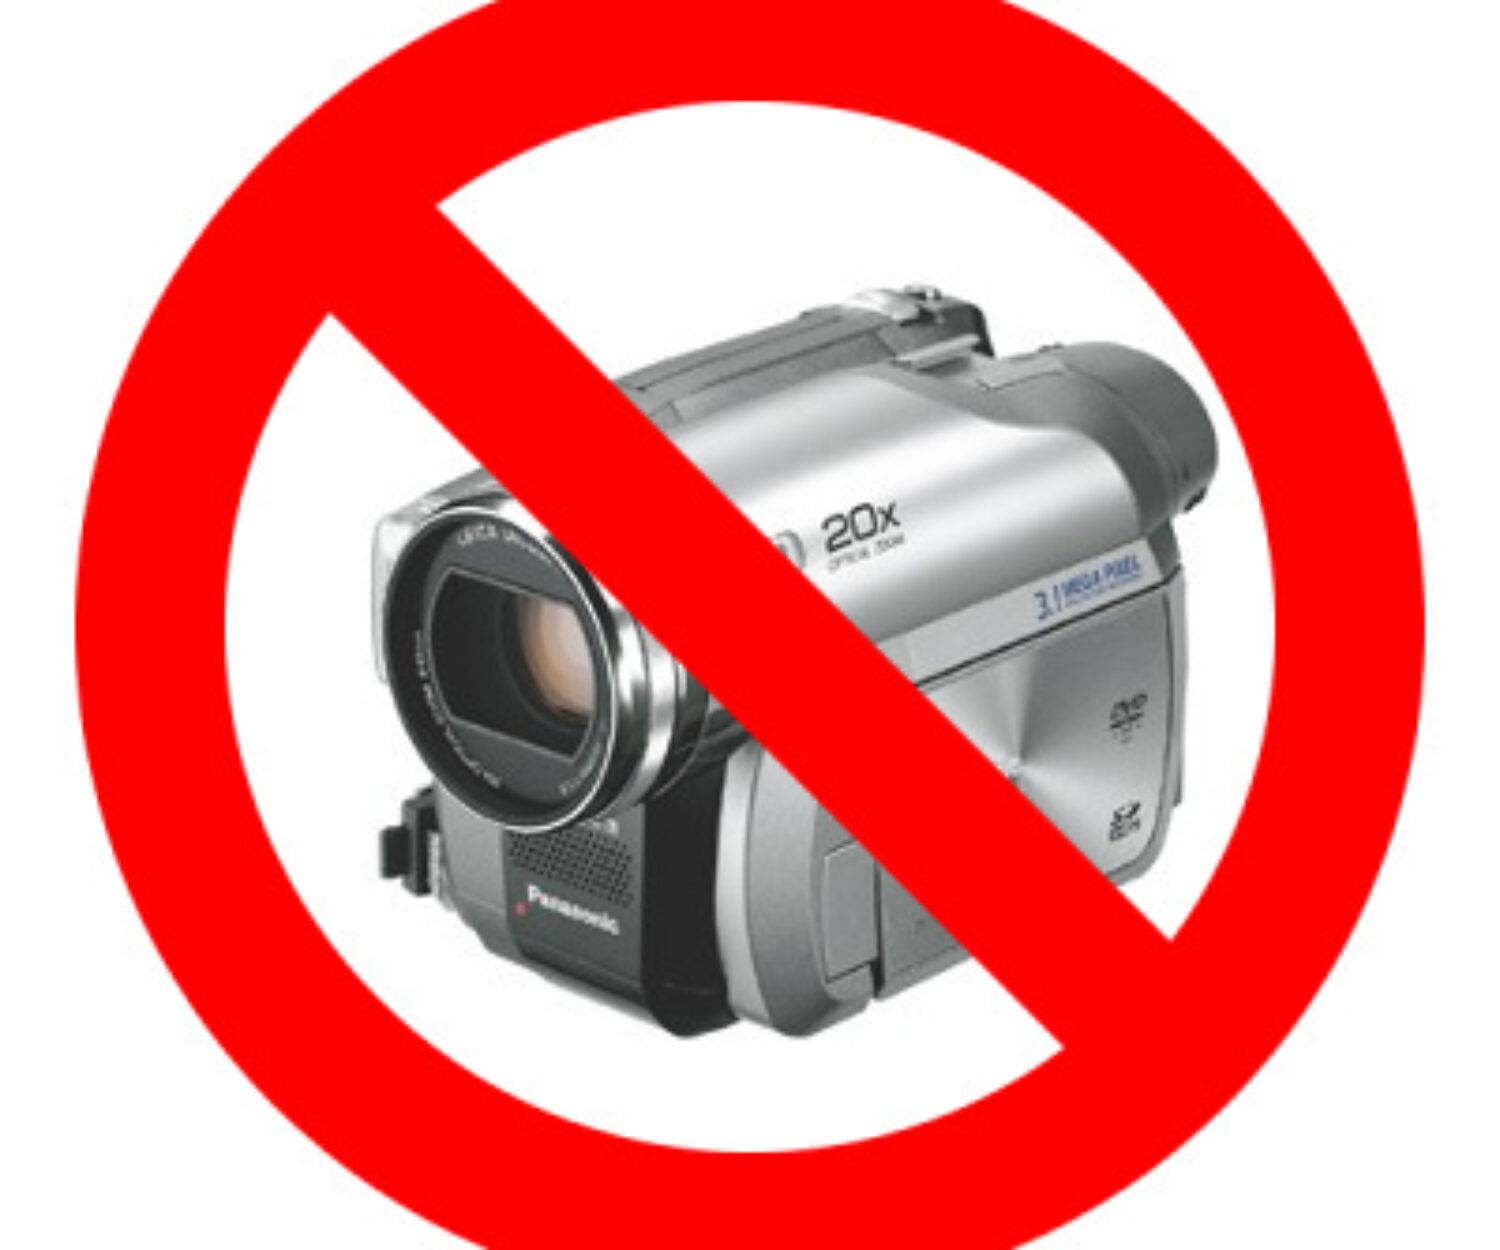 Видео без запрета. Запрещается камера. Табличка съемка запрещена. Фотоаппарат запрещен. Значок видеосъемка запрещена.